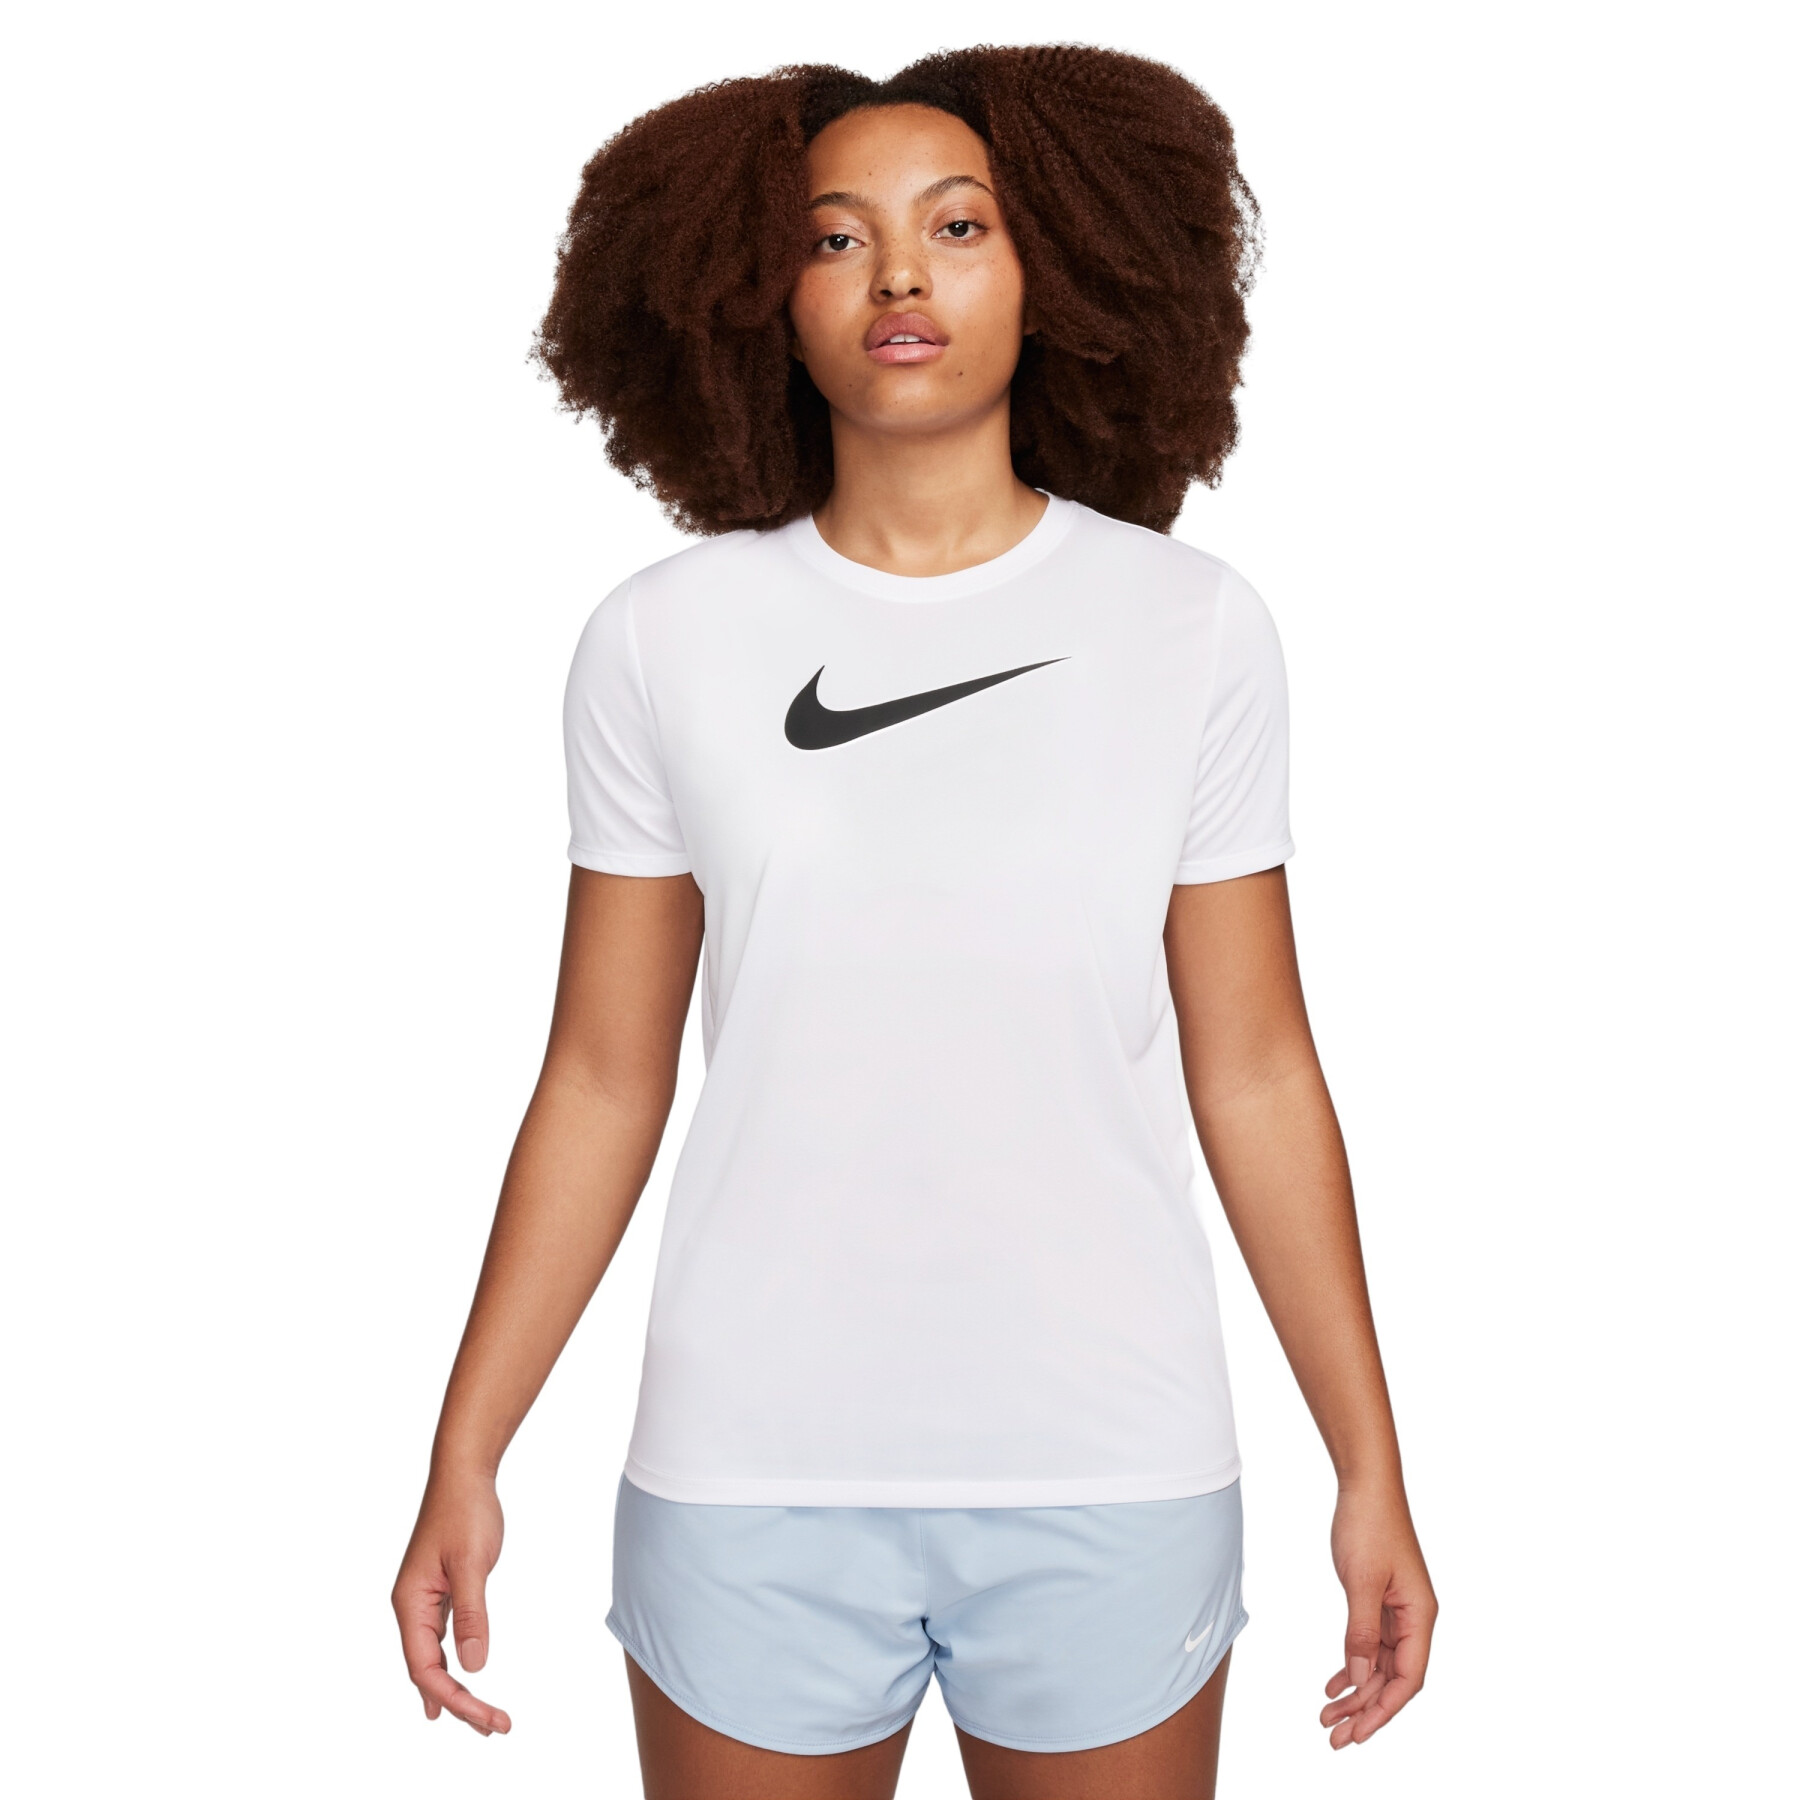 Women's T-shirt Nike